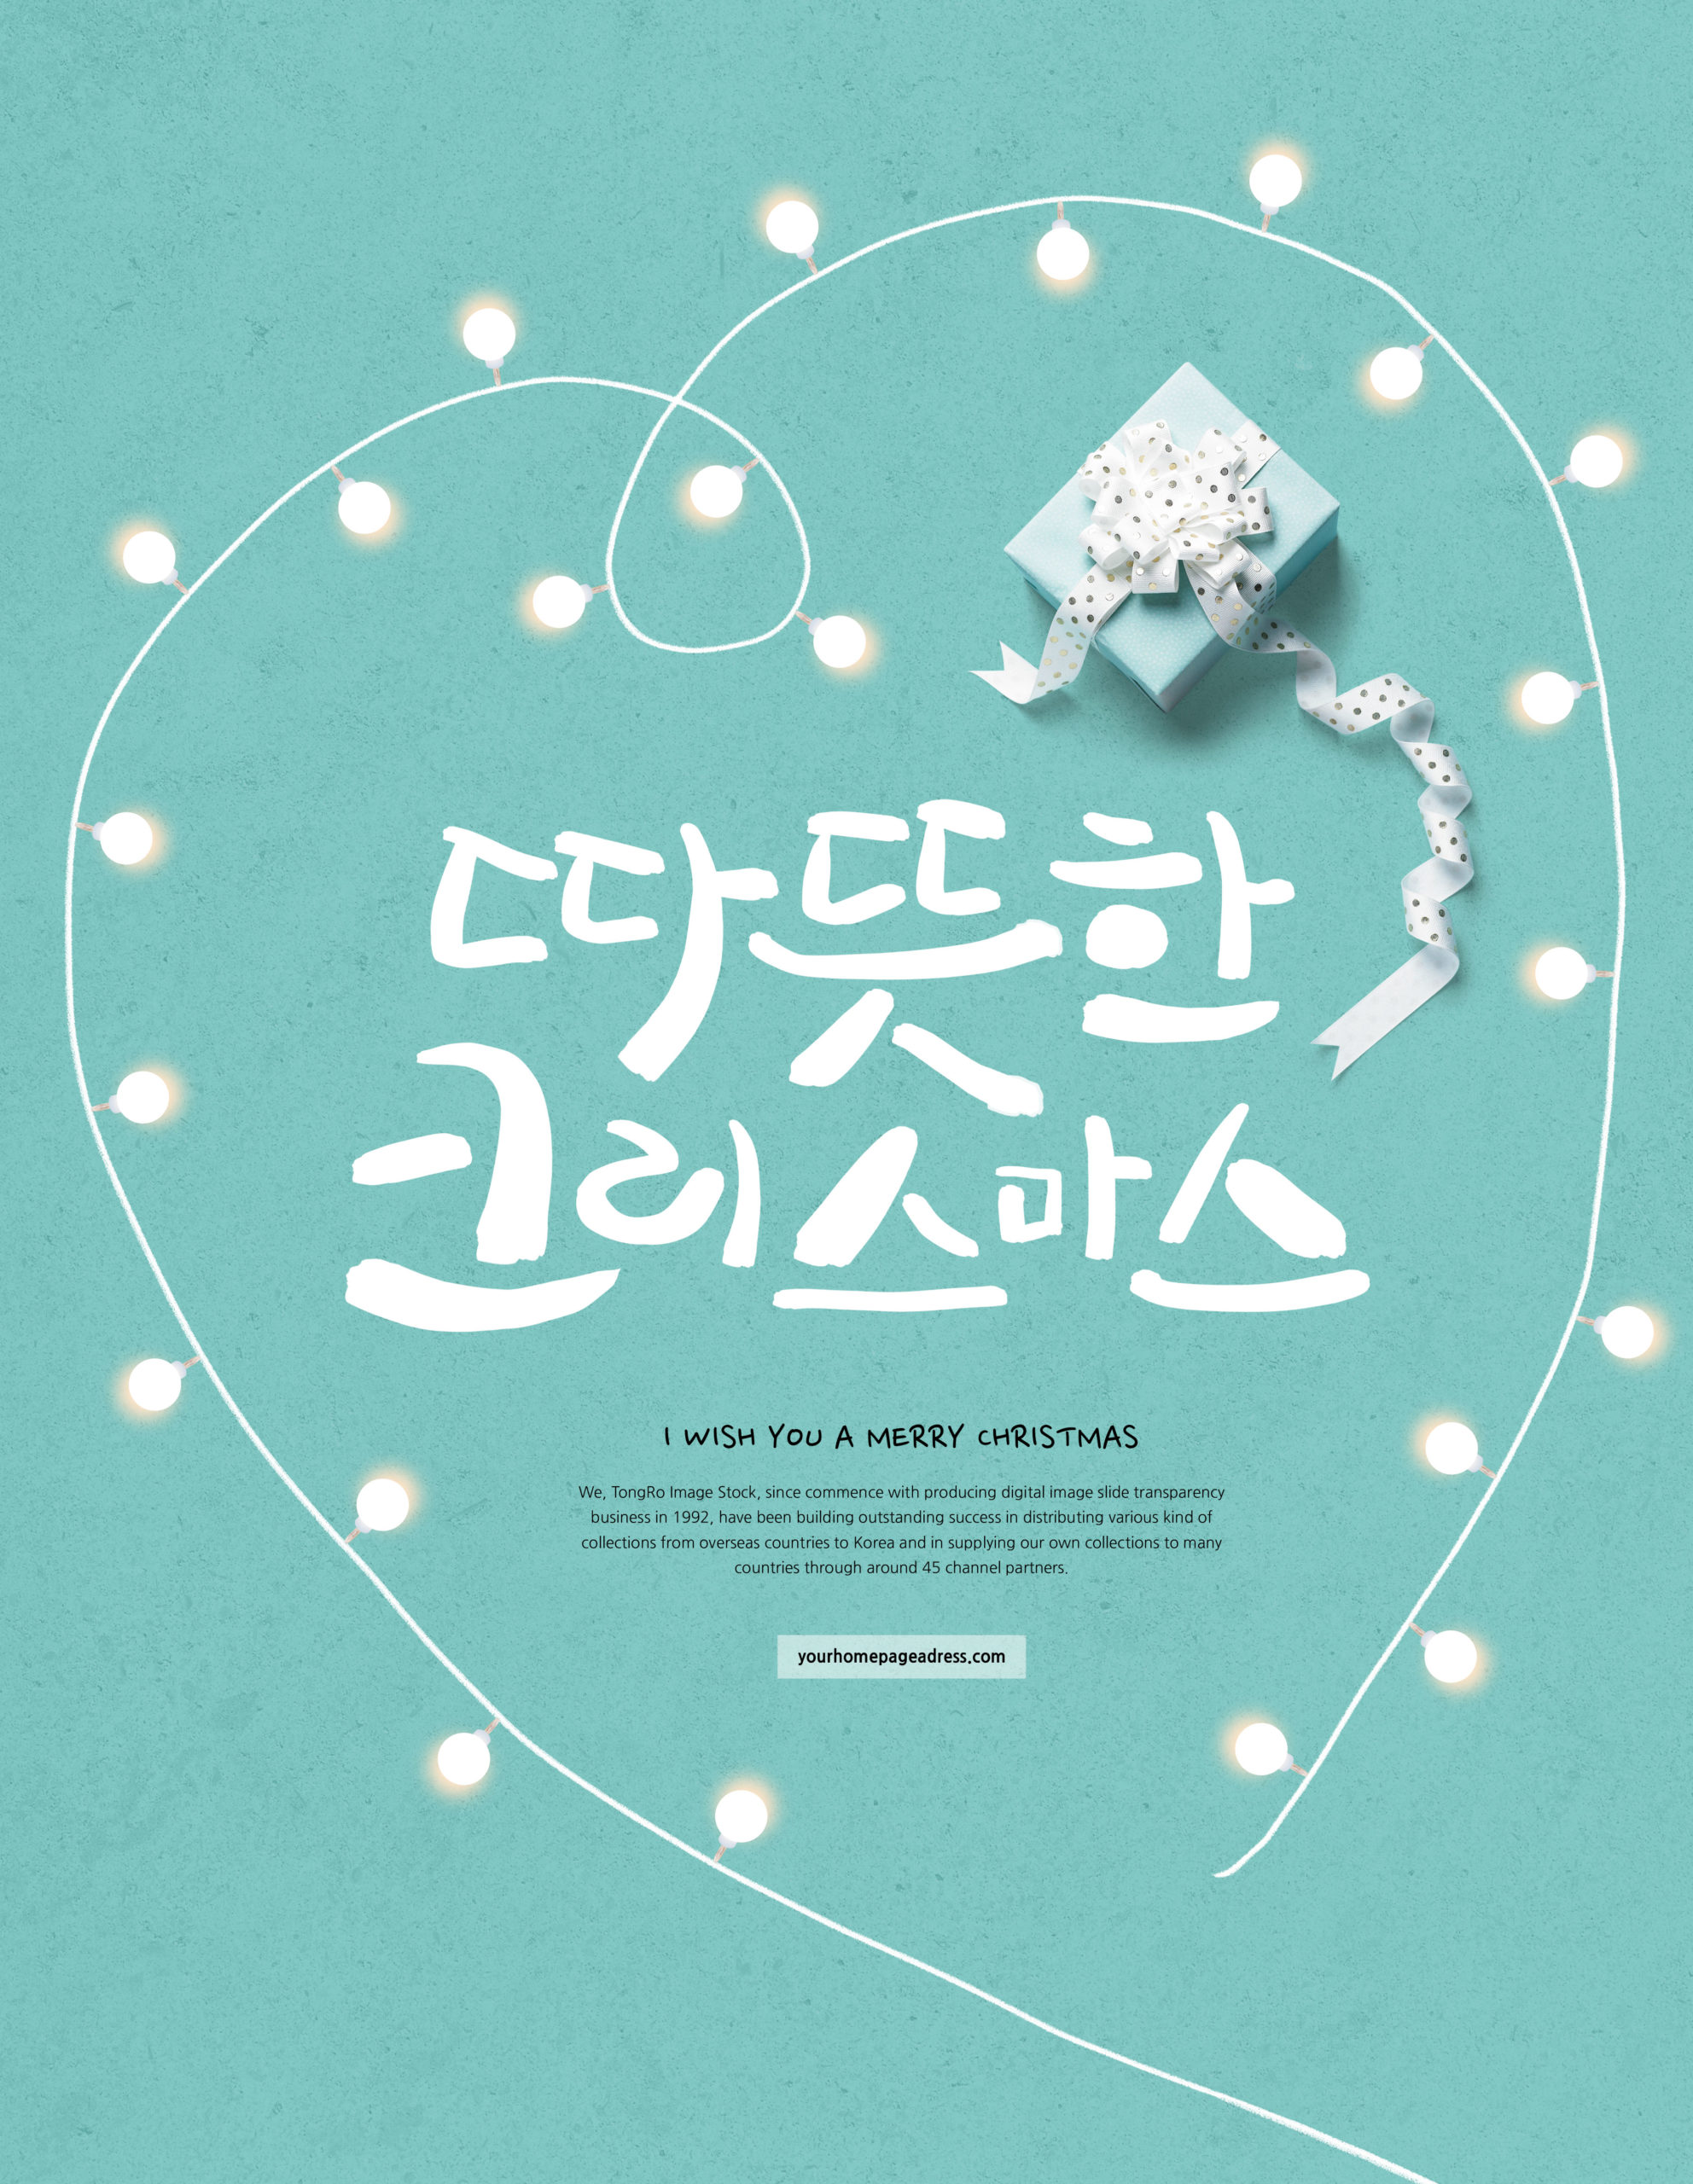 创意线条设计爱心灯泡圣诞祝福海报psd素材插图